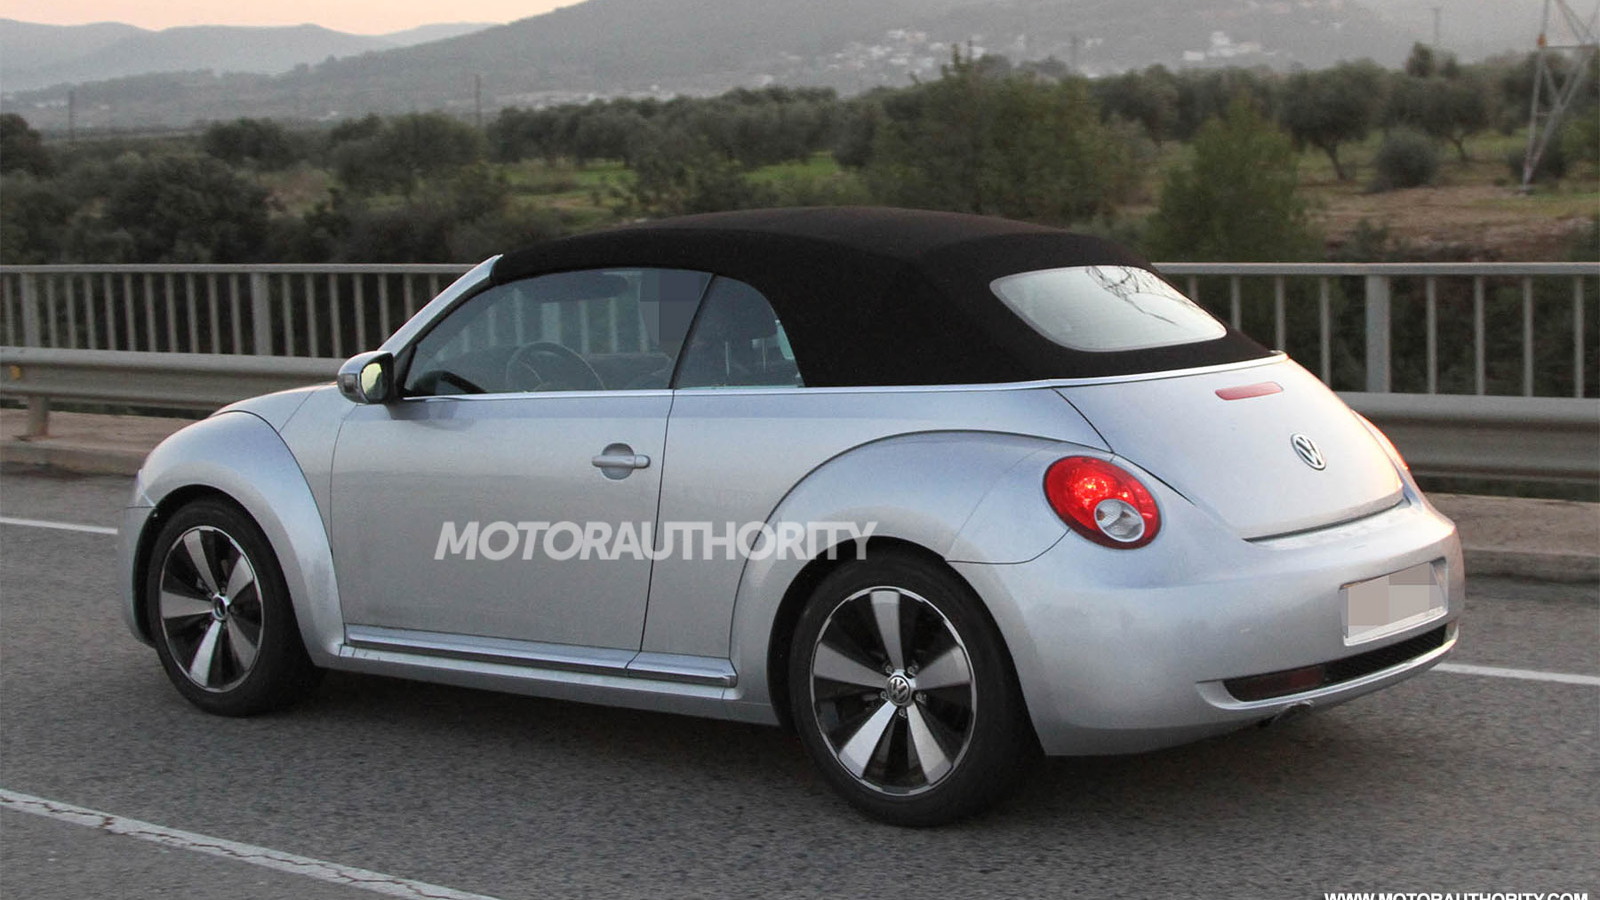 2013 Volkswagen Beetle Convertible spy shots